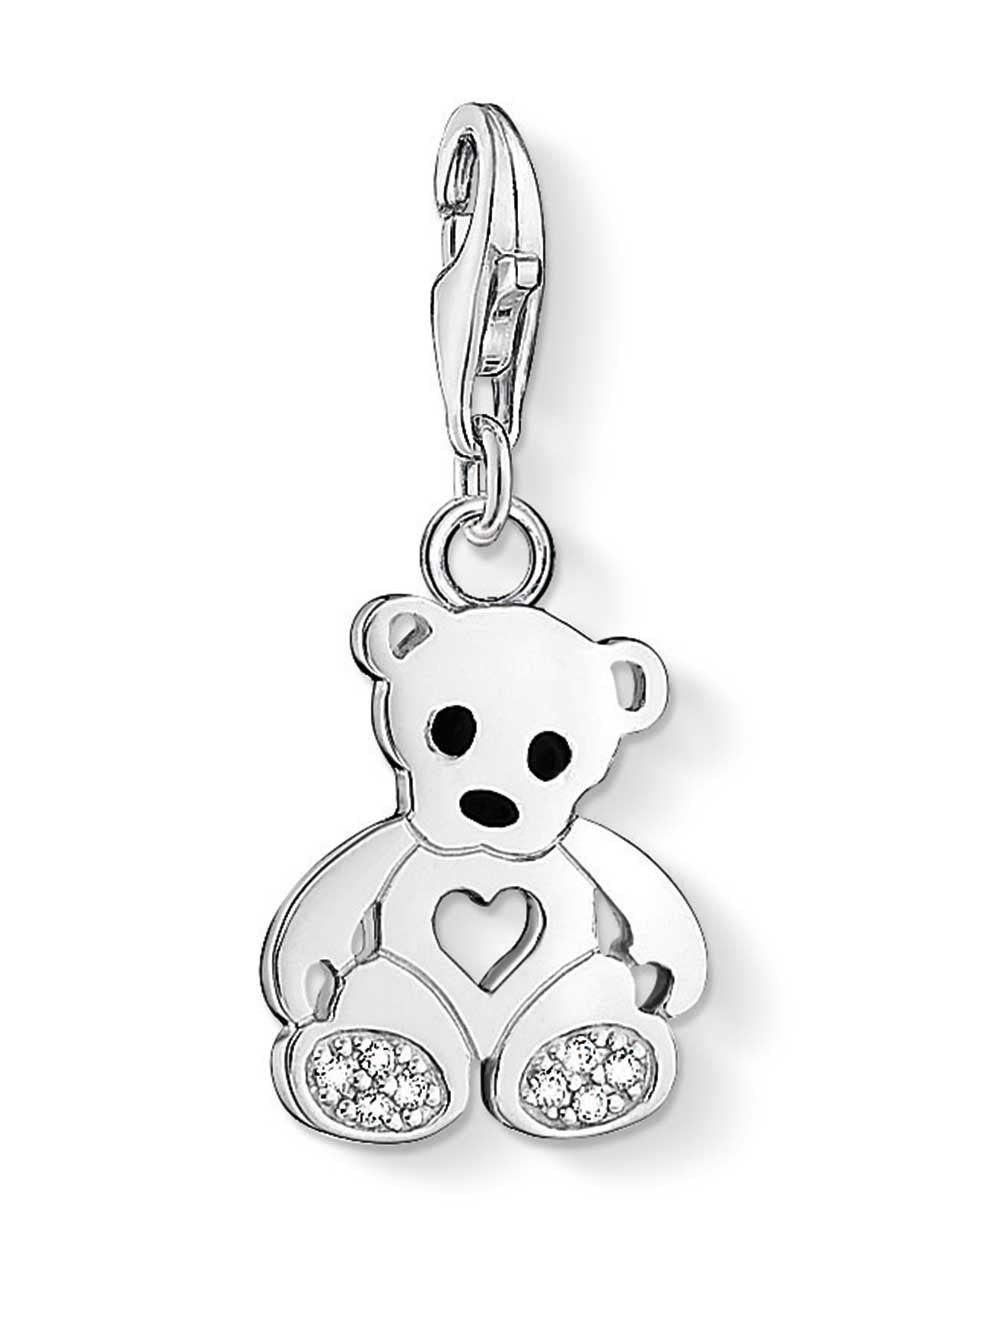 Thomas Sabo Charm 1119-041-14 Teddy Bear with heart